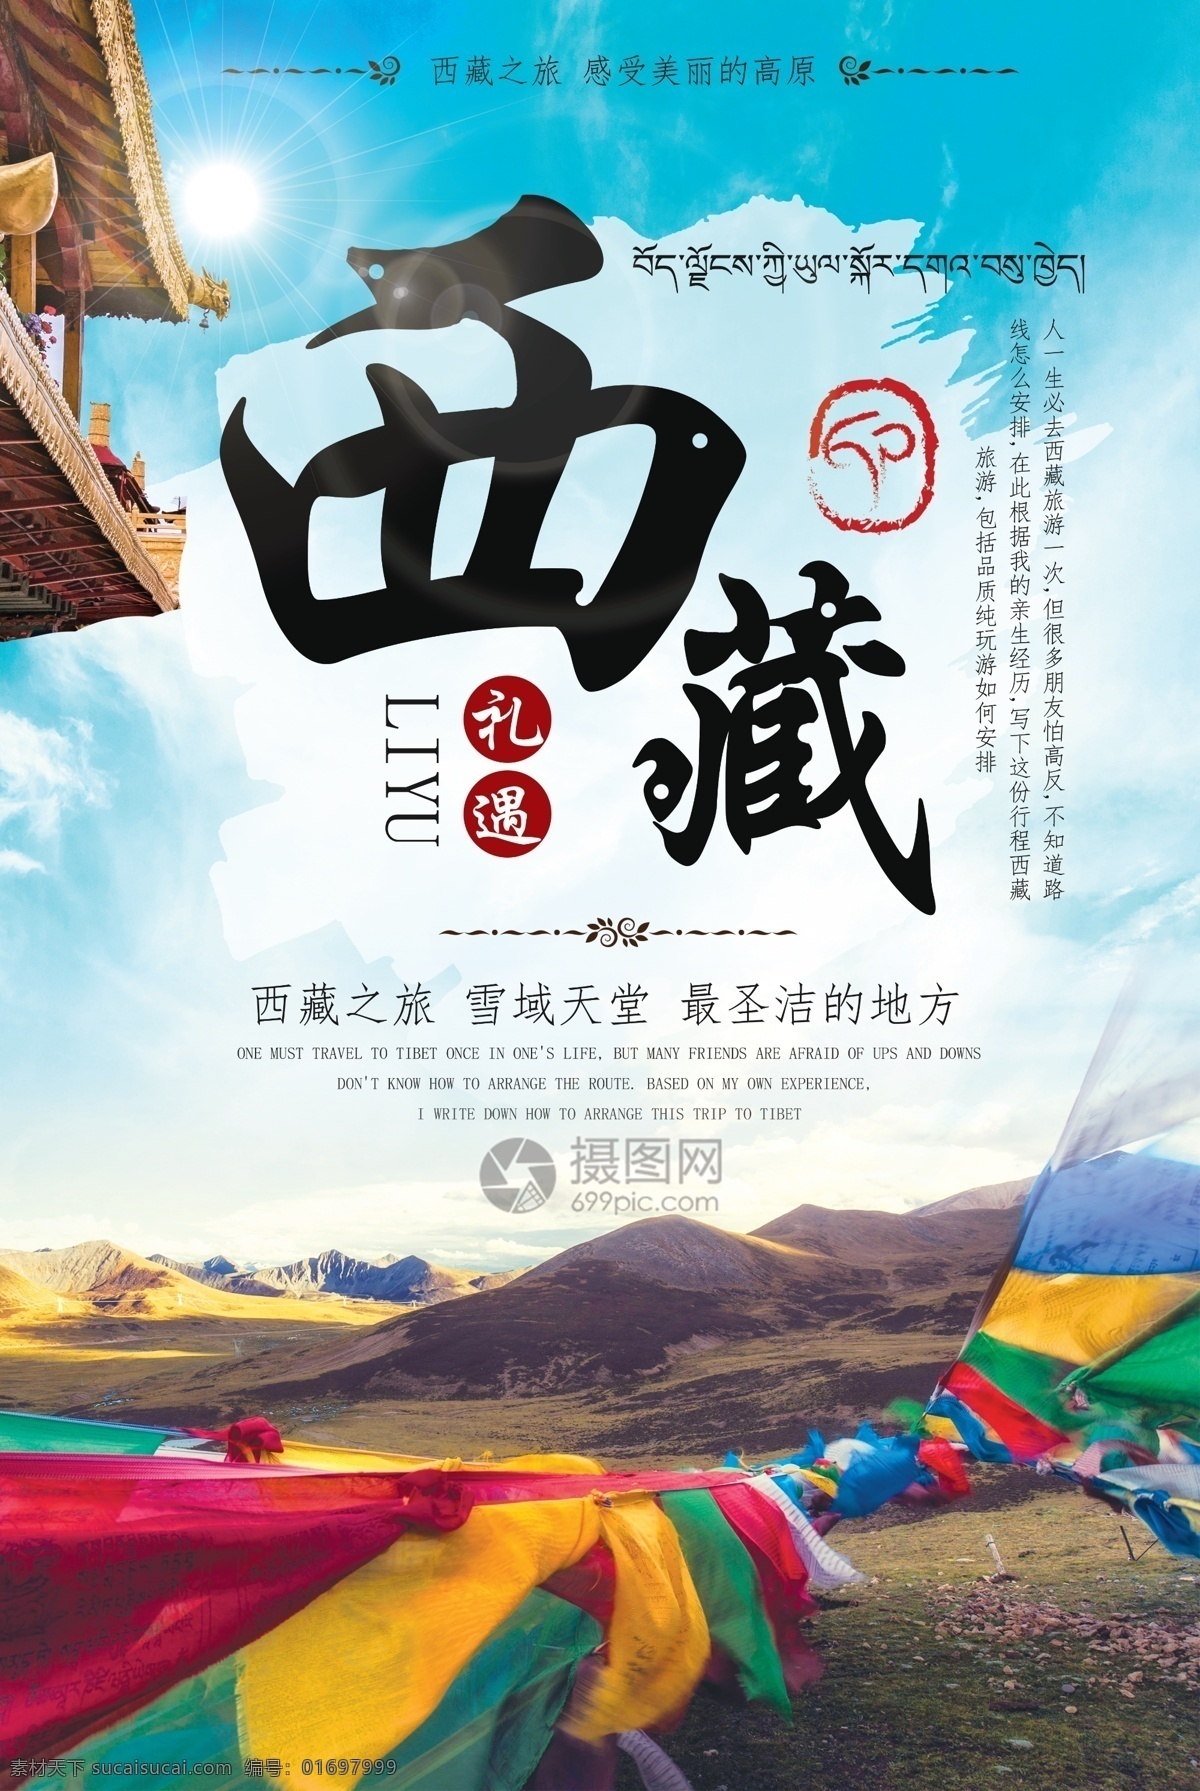 西藏旅游 宣传海报 西藏 礼遇 胜地 蓝天 白云 经幡 藏区 角楼 雪域天堂 圣洁 高原 西藏旅游海报 西藏宣传海报 旅游海报